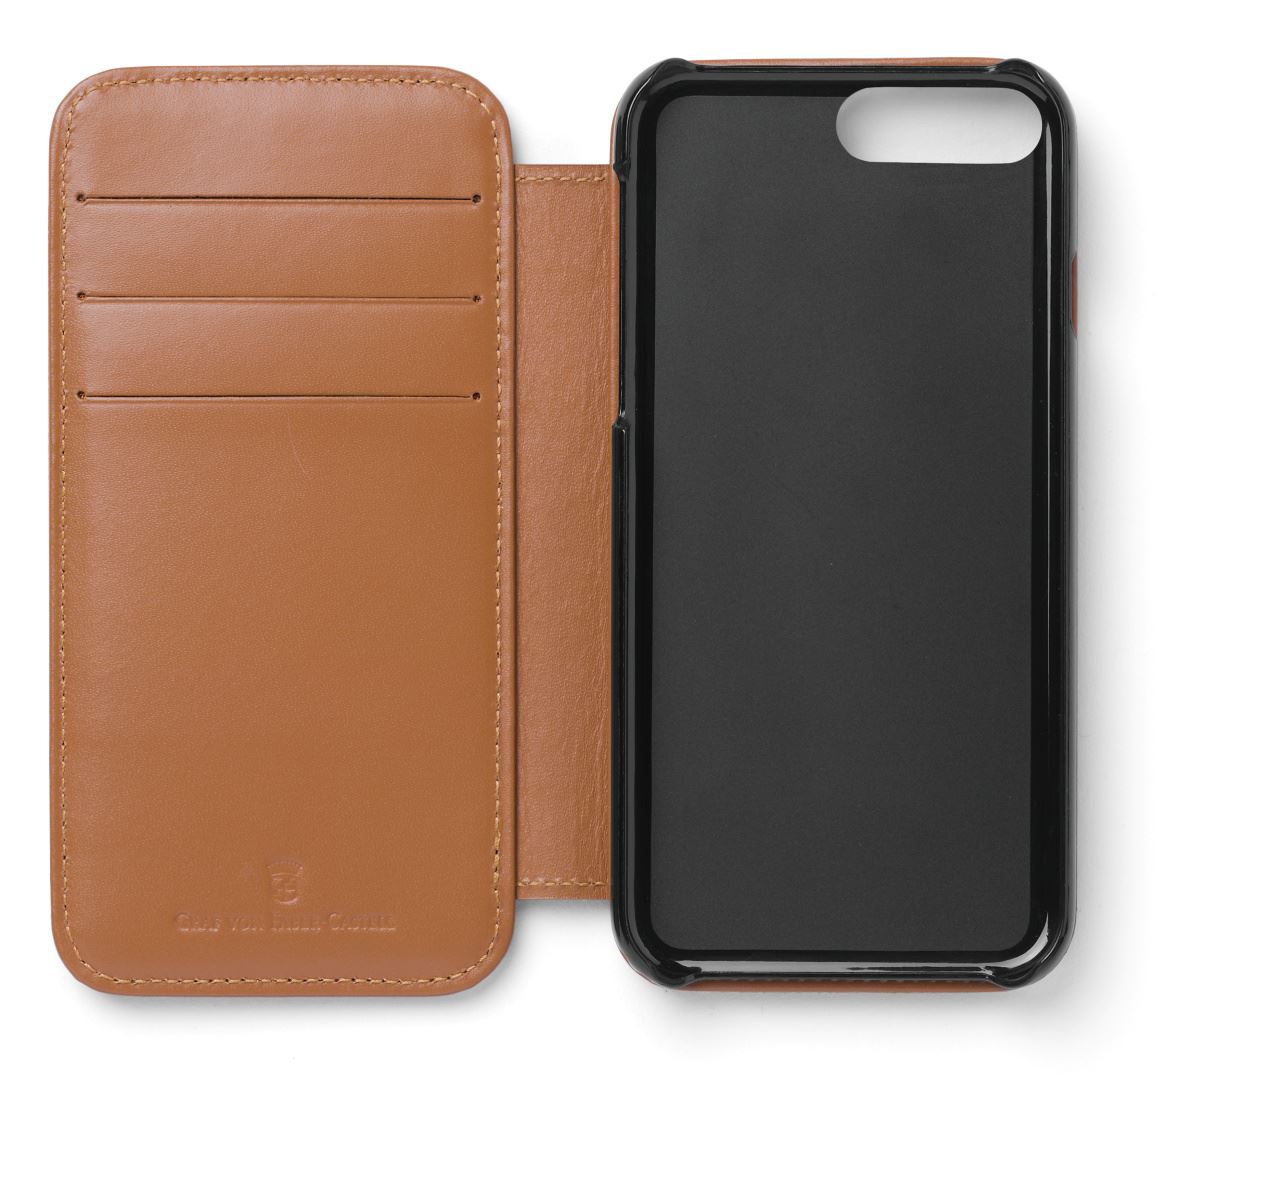 Graf-von-Faber-Castell - Custodia per smartphone iPhone 8 plus, Epsom, cognac